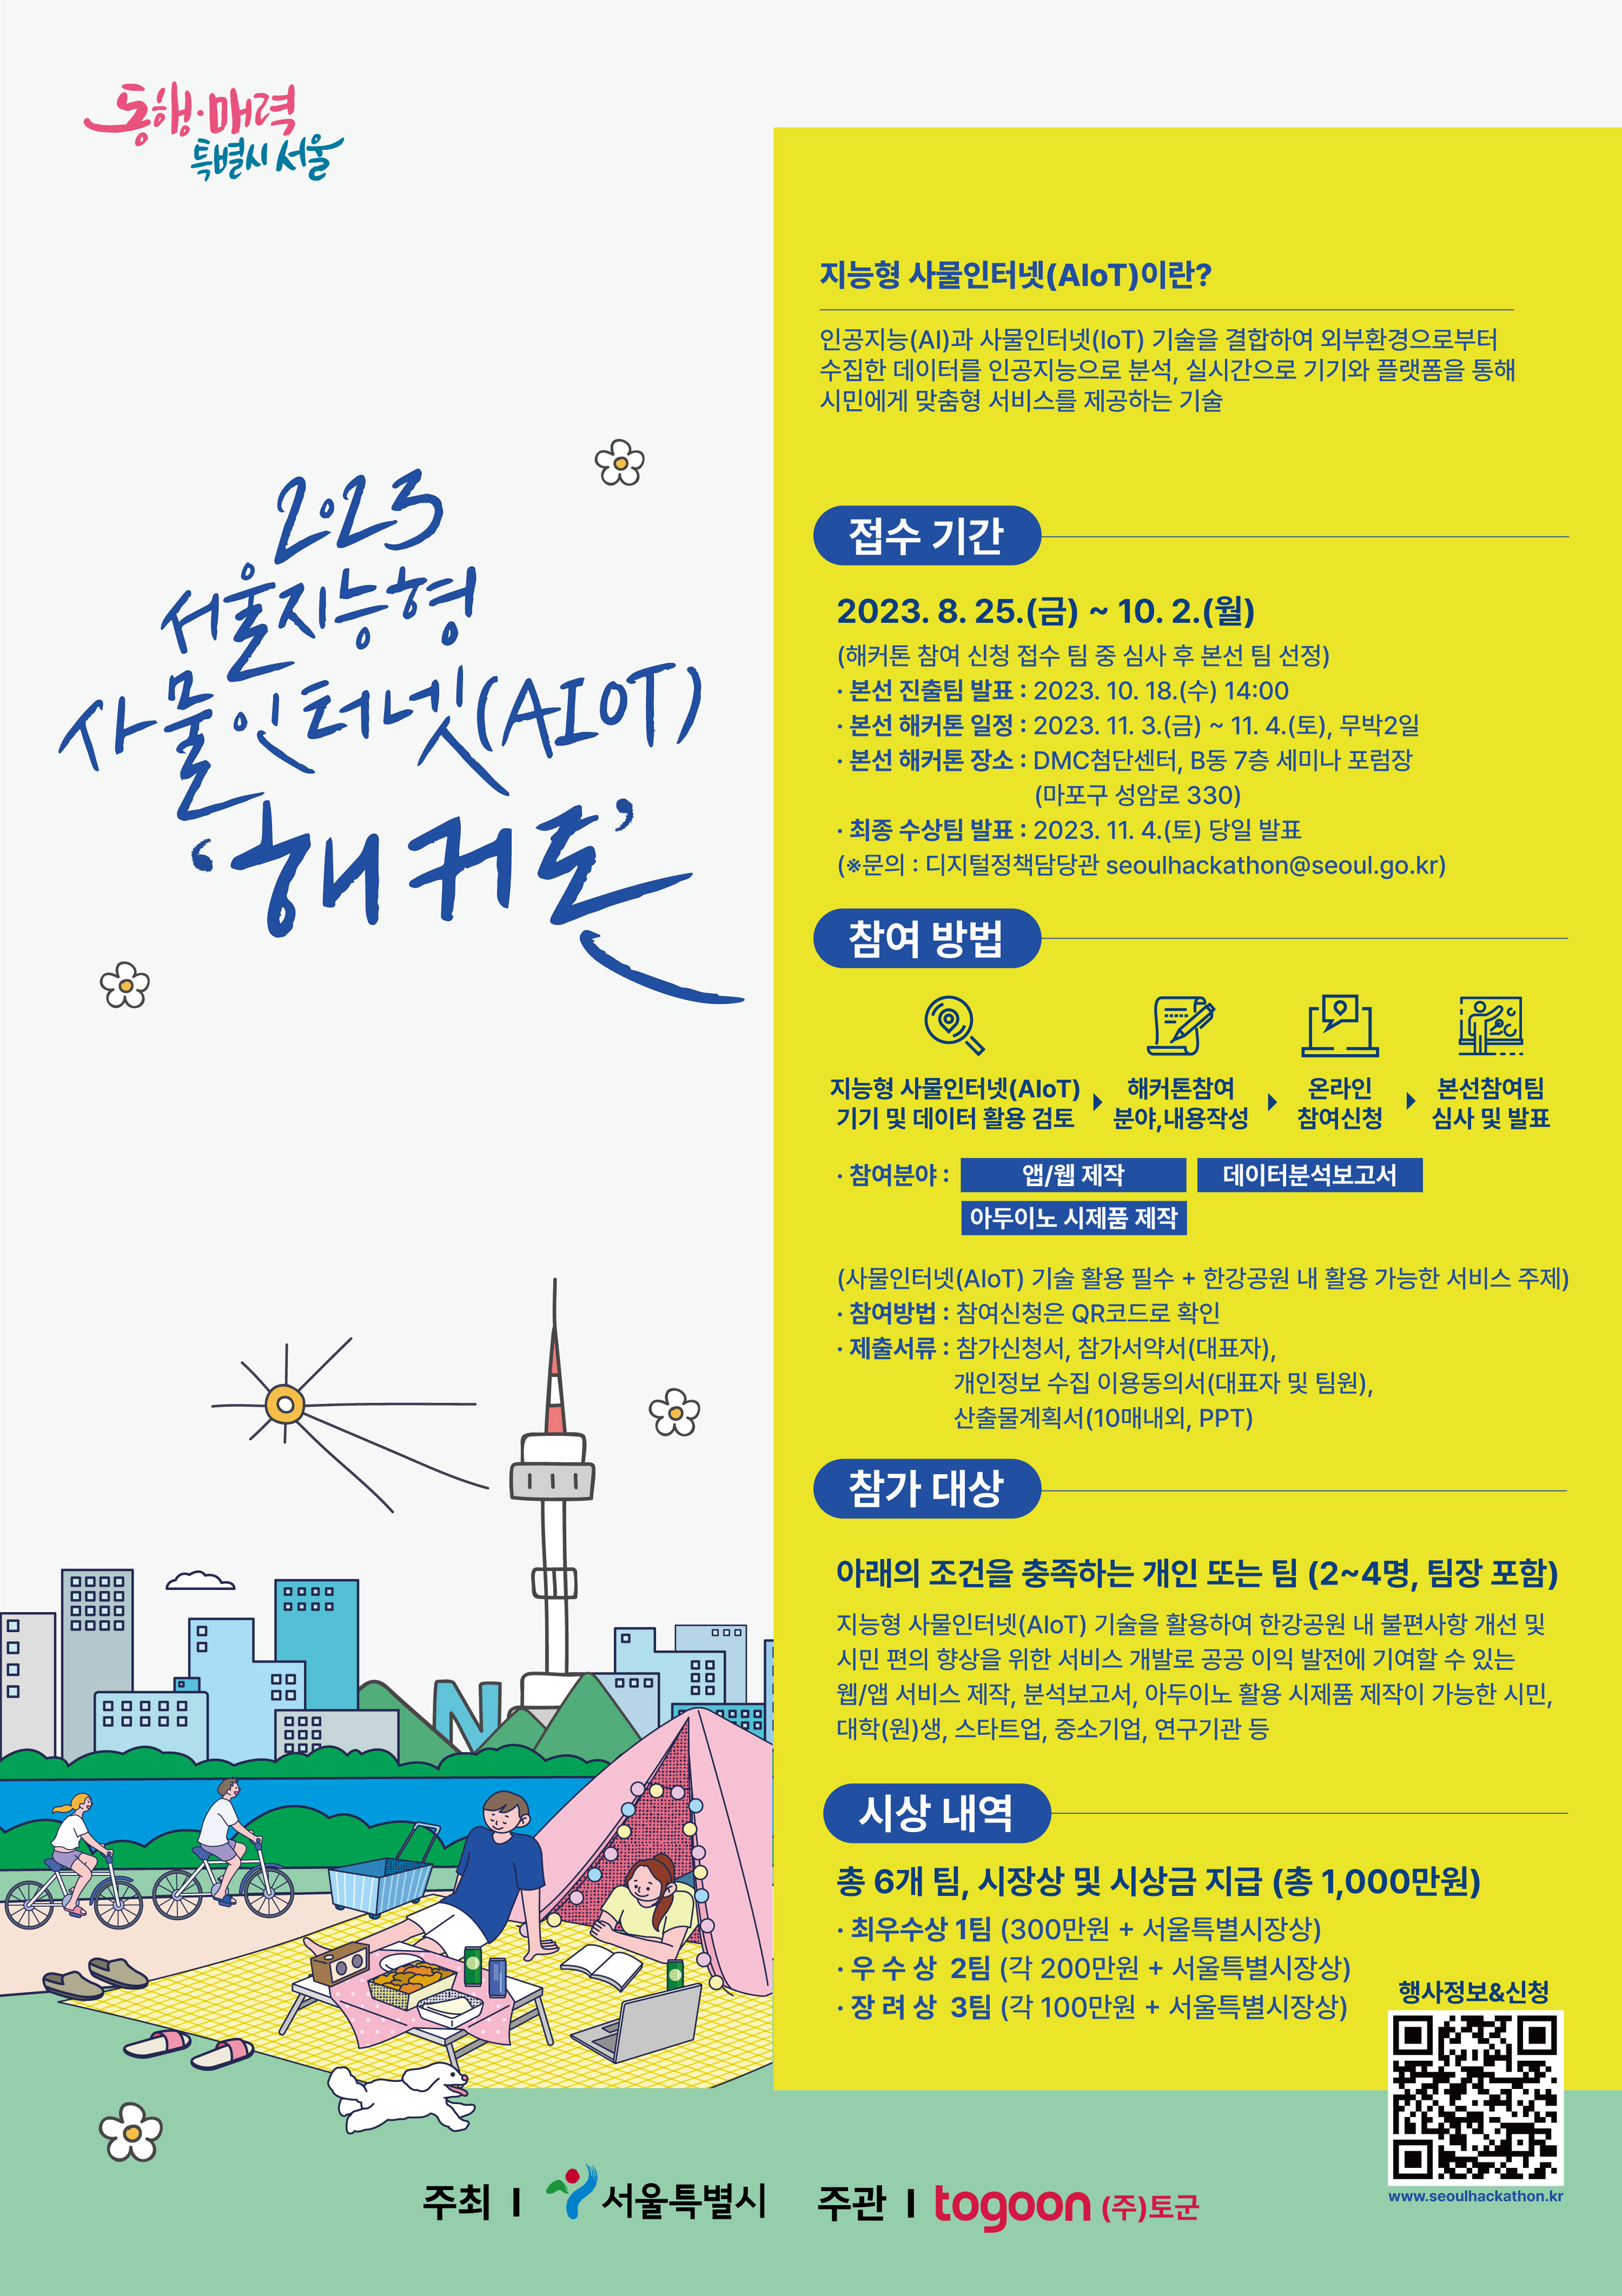 2023 서울 지능형 사물인터넷(AIoT) 해커톤 대회 개최 이미지 1 - 본문에 자세한설명을 제공합니다.